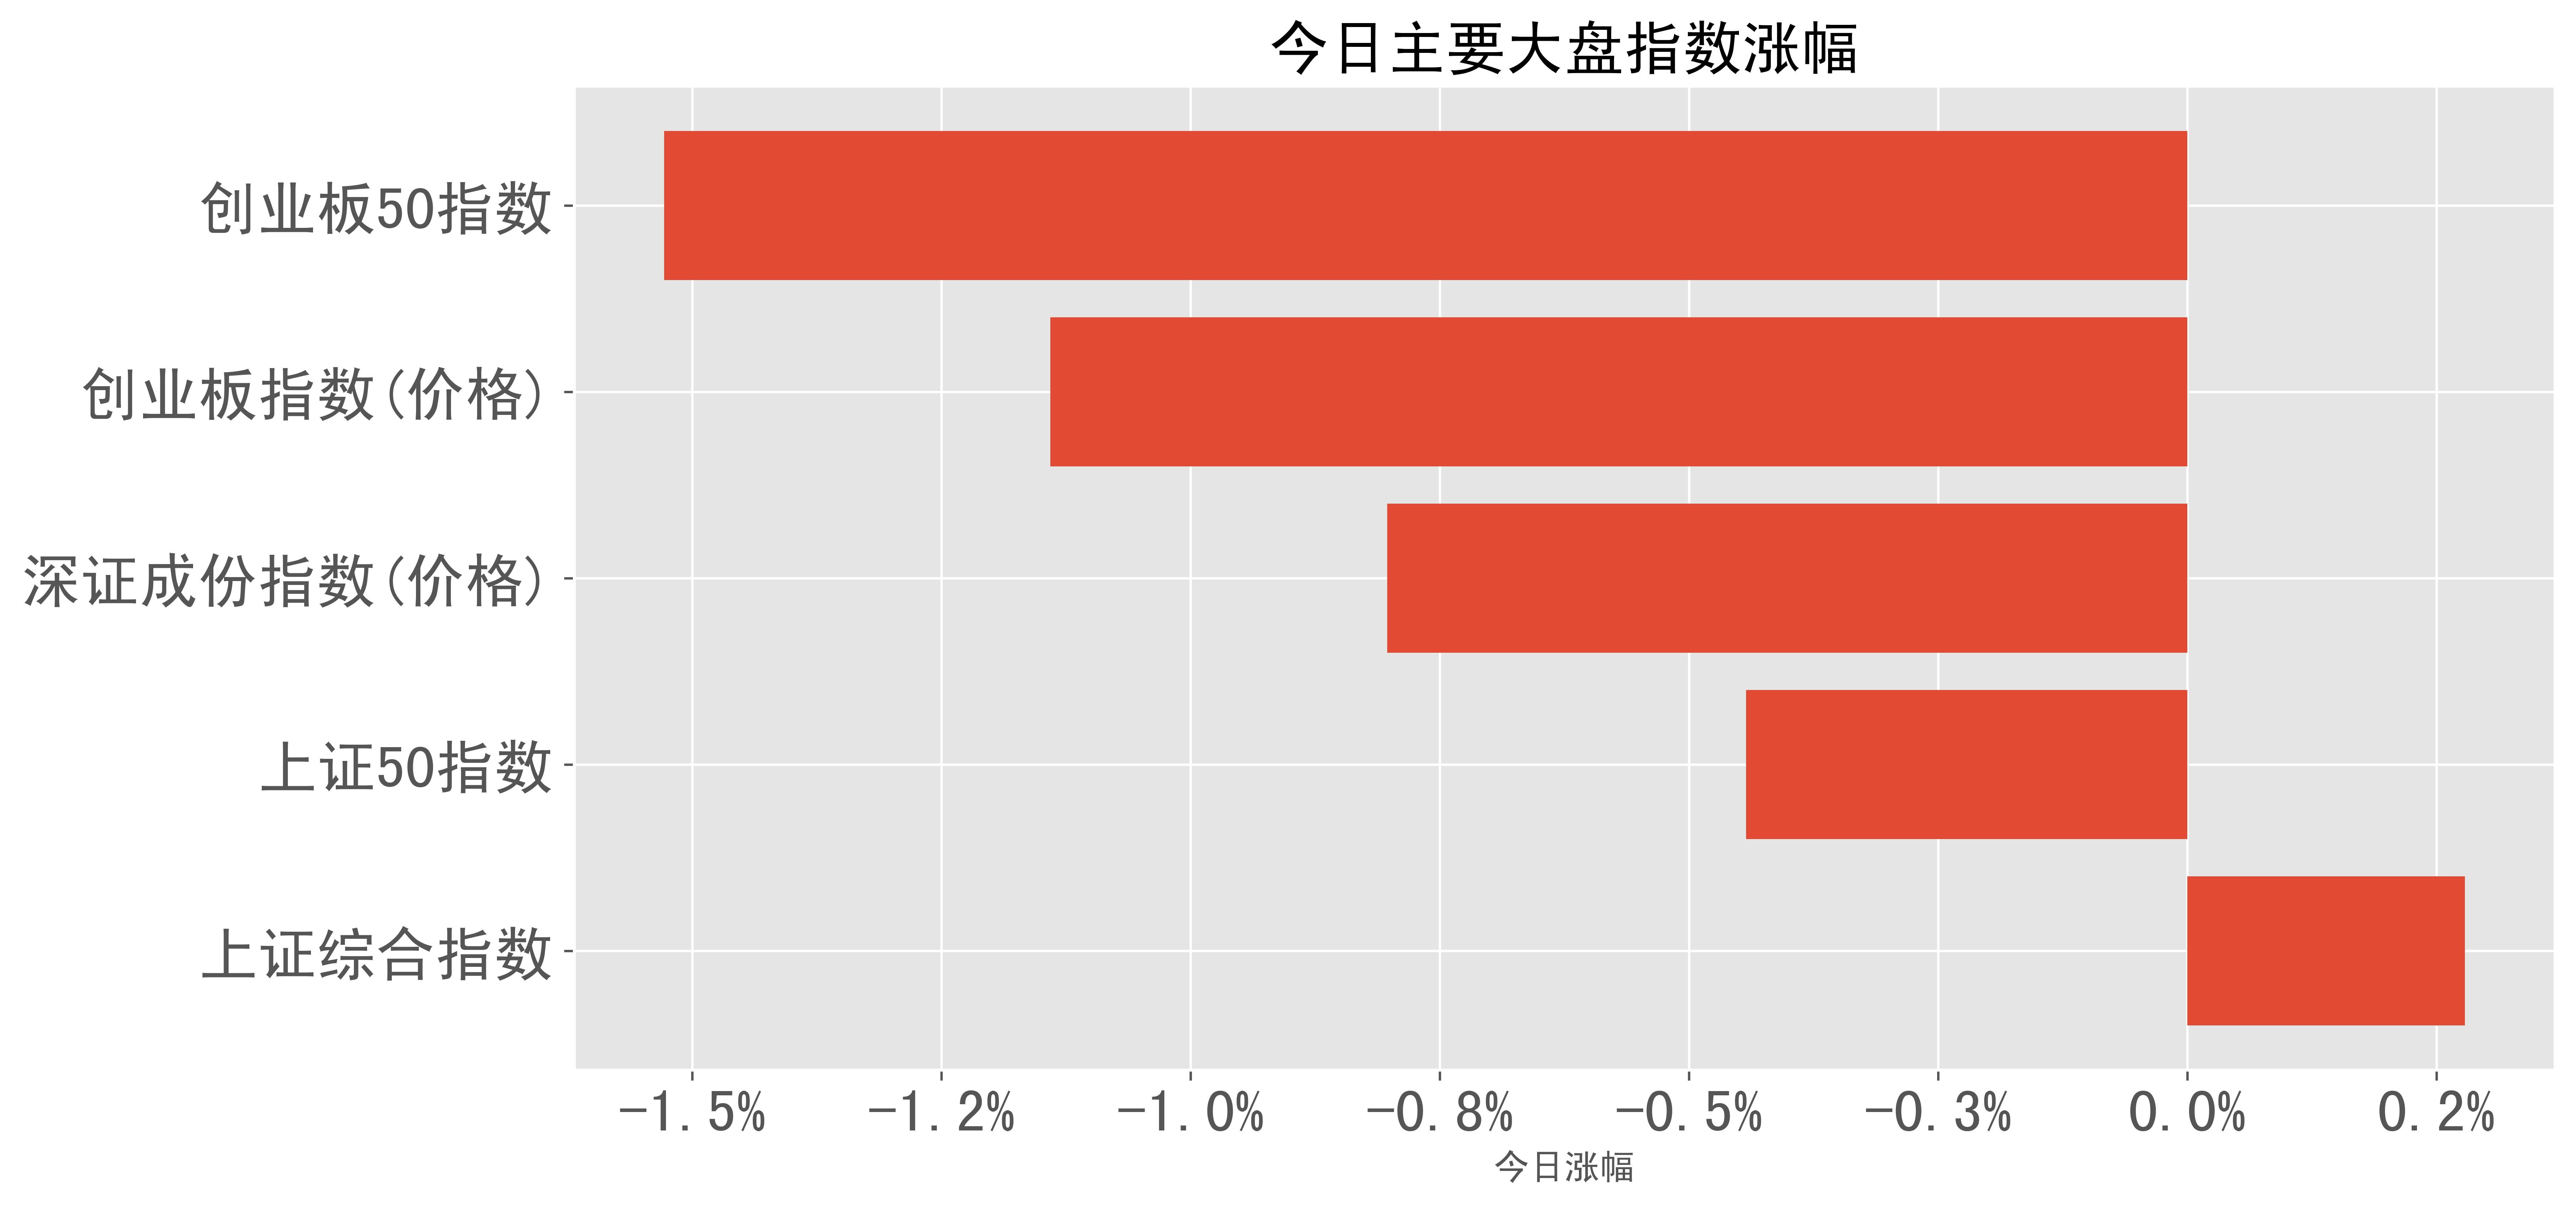 港股内房股涨幅排行榜：融创中国涨59%，十余个股涨超30%_房地产市场_预期_发展